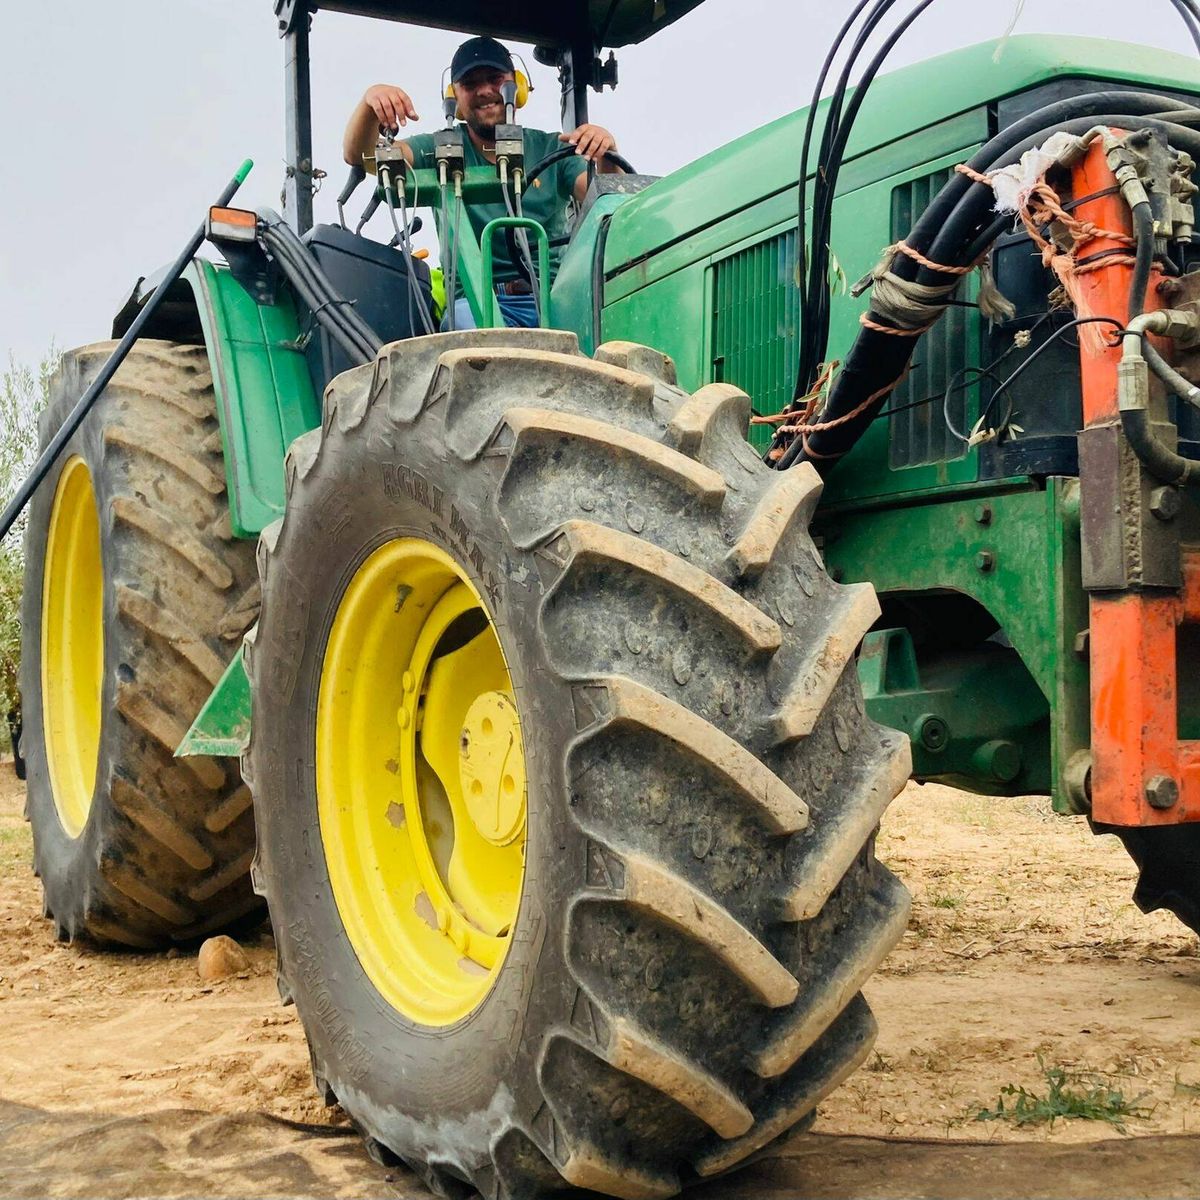 extraño Raza humana Opuesto John Deere es el tractor que todo agricultor quería, hasta que se pasaron  de modernos